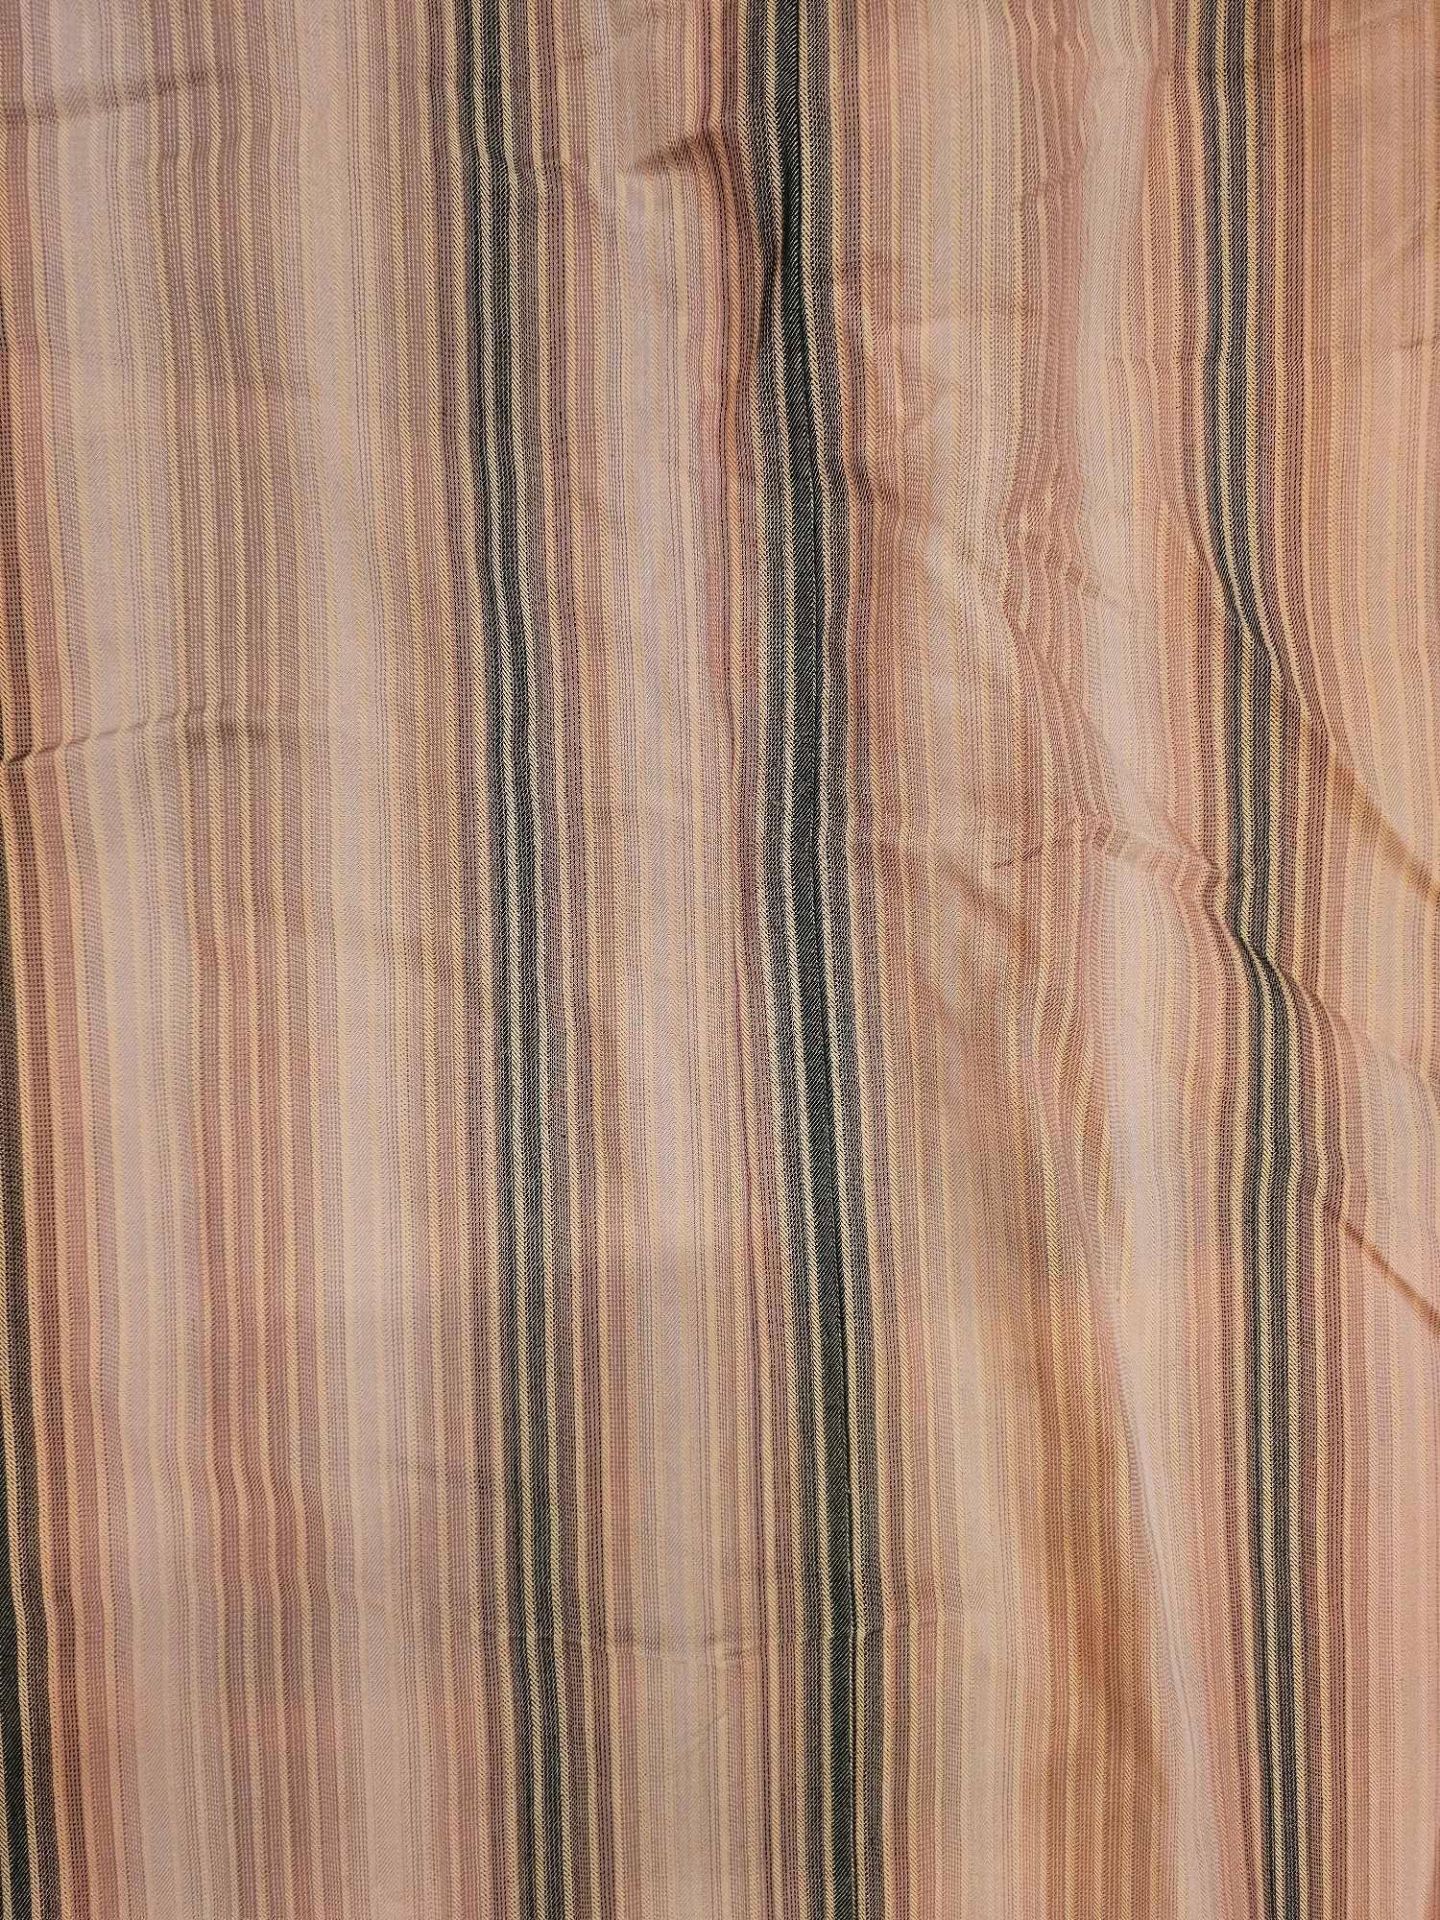 A Pair Silk Drape Pink /Grey StripesSize -cm 132 x 310 Ref Dorch 56 - Bild 3 aus 3